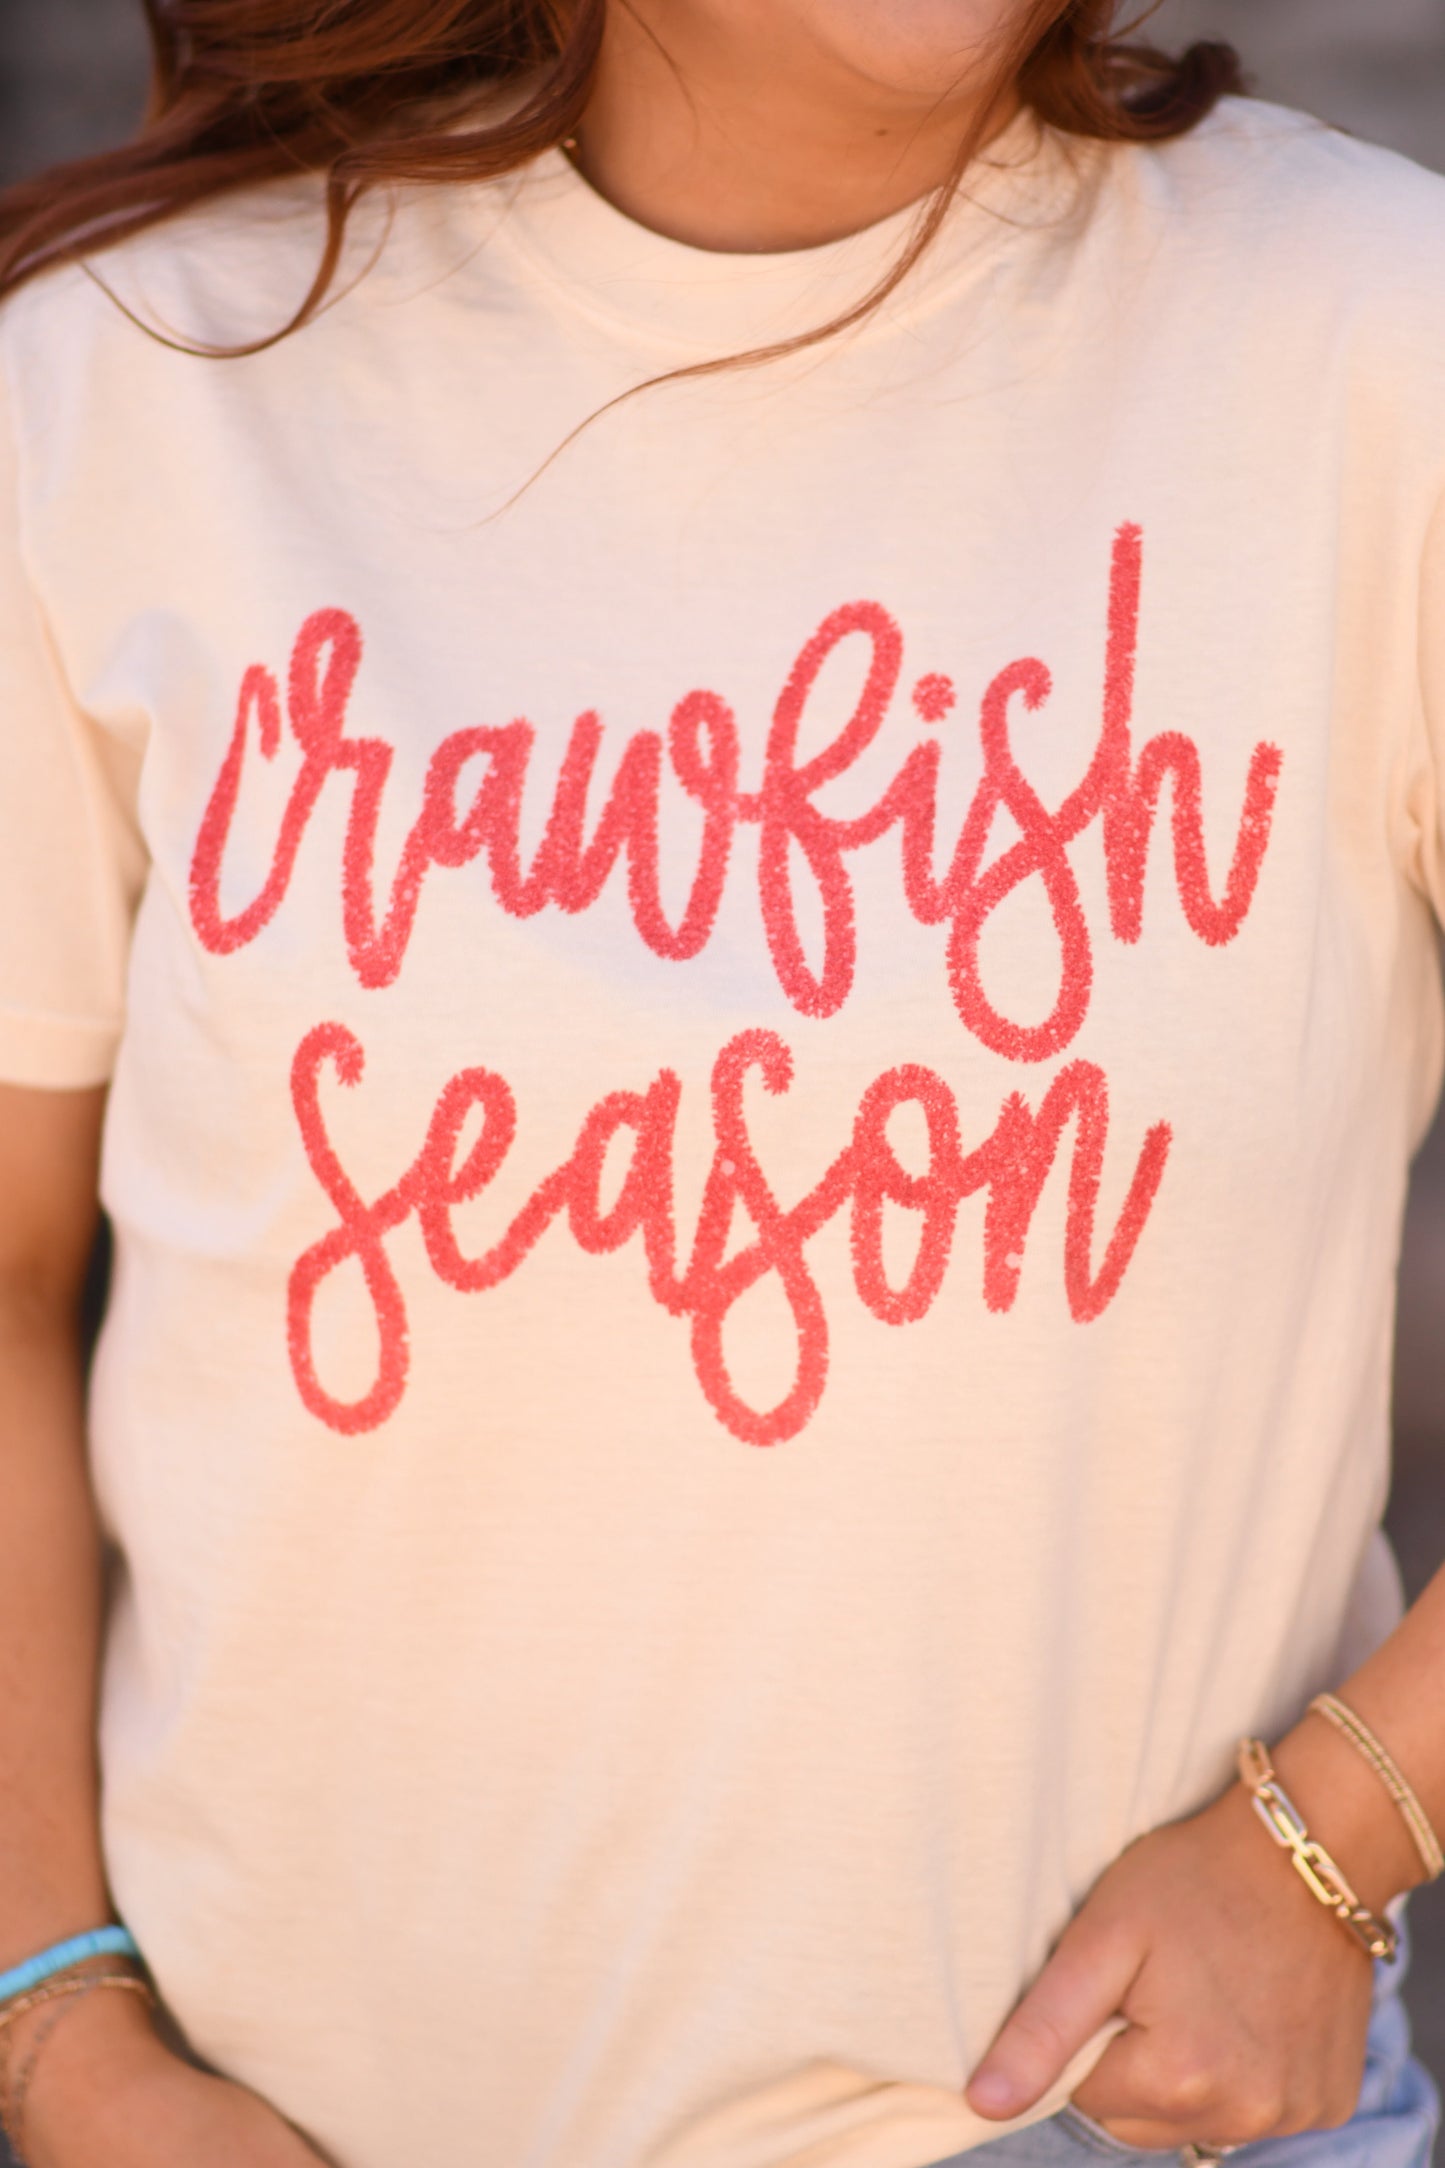 Crawfish Season Faux Tinsel graphic tee